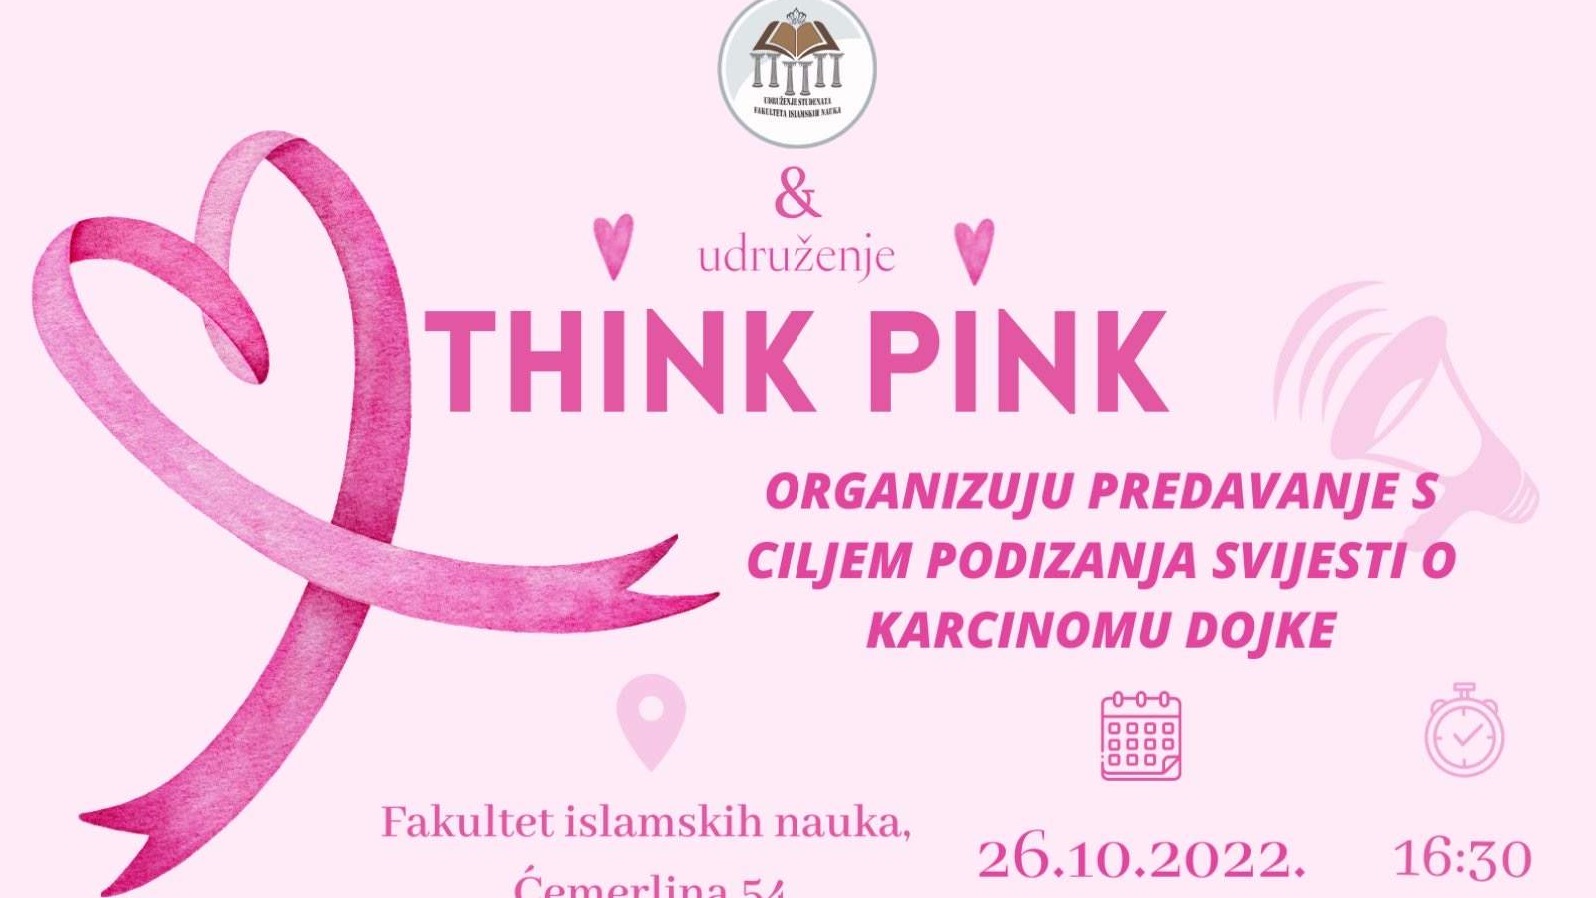 FIN: Danas predavanje o podizanju svijesti o karcinomu dojke 